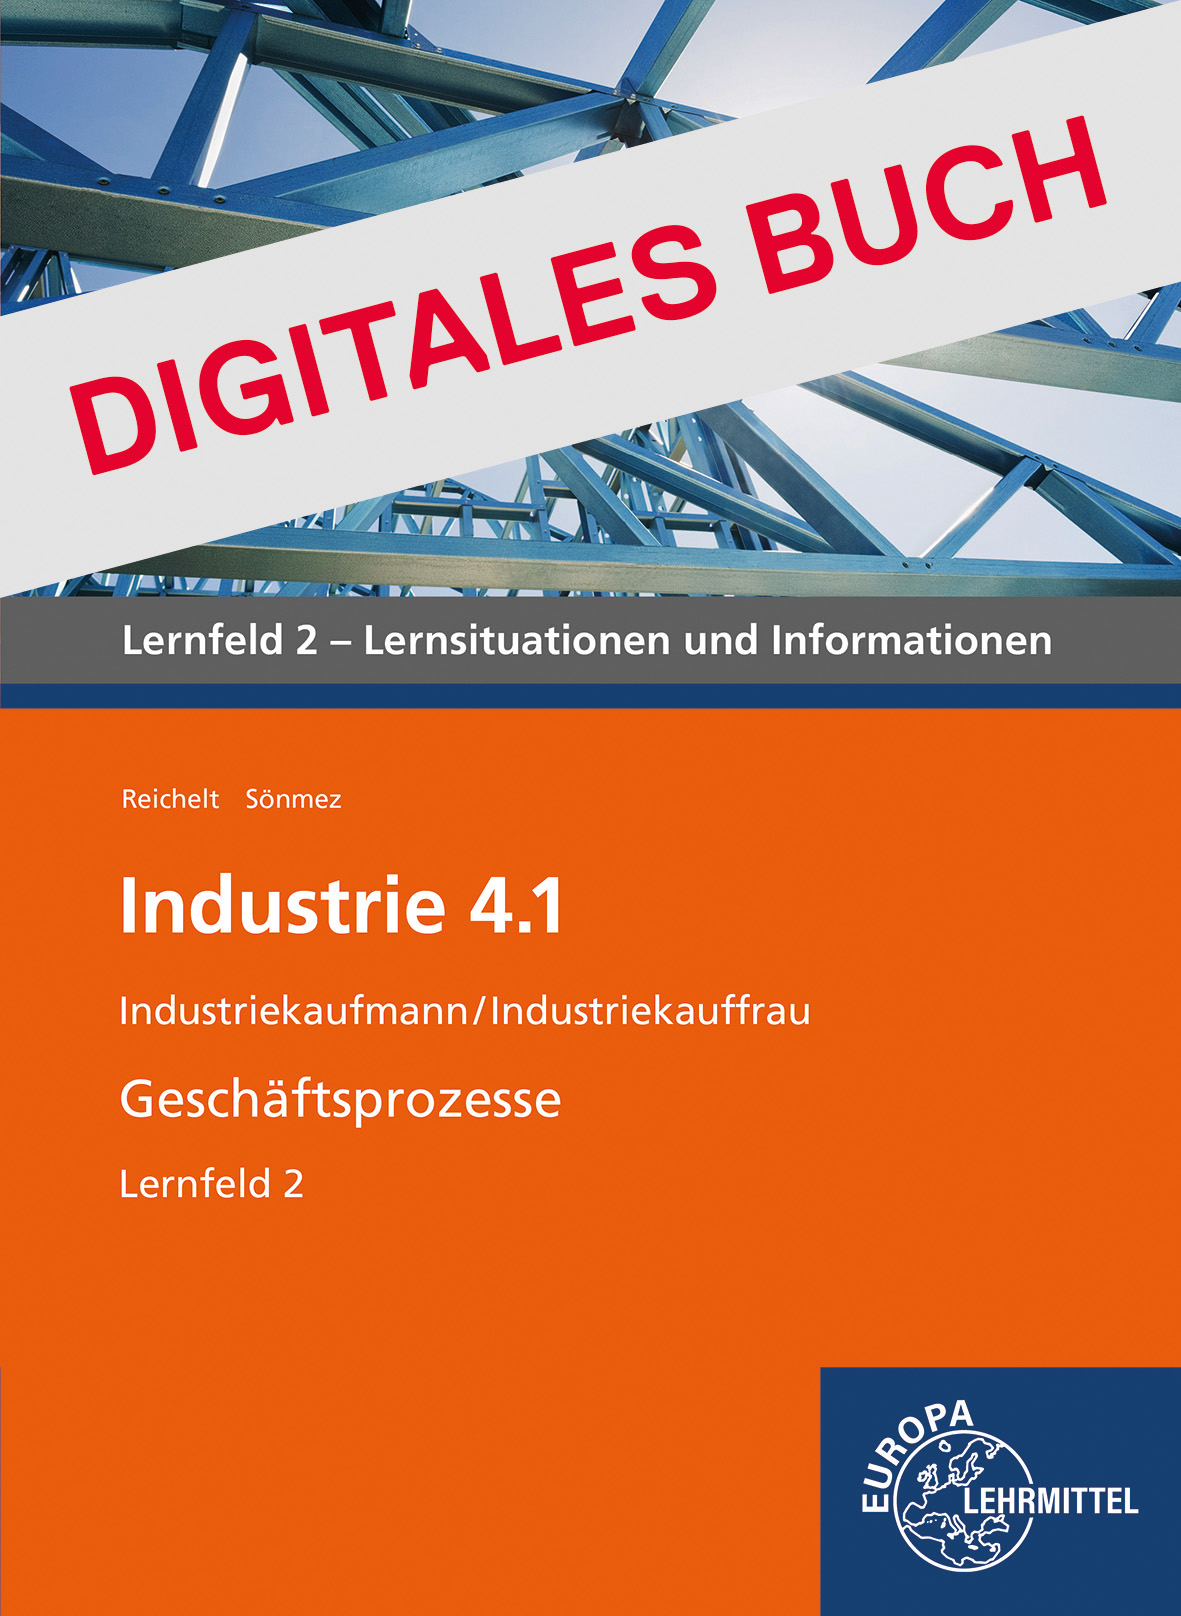 Industrie 4.1, Geschäftsprozesse, LF 2 - Digitales Buch